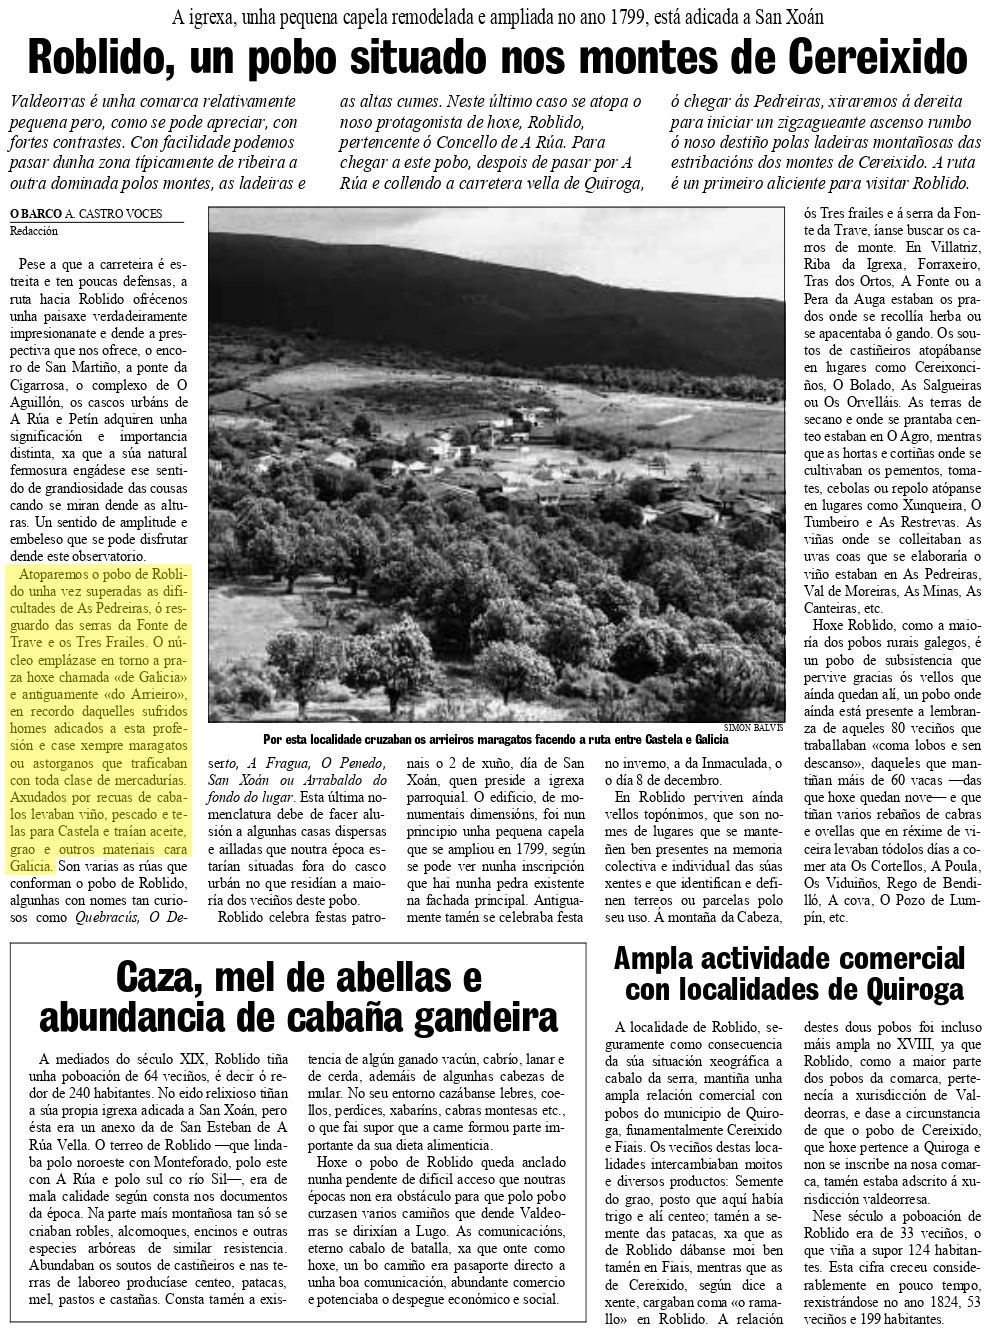 La Voz de Galicia, 11/05/1997